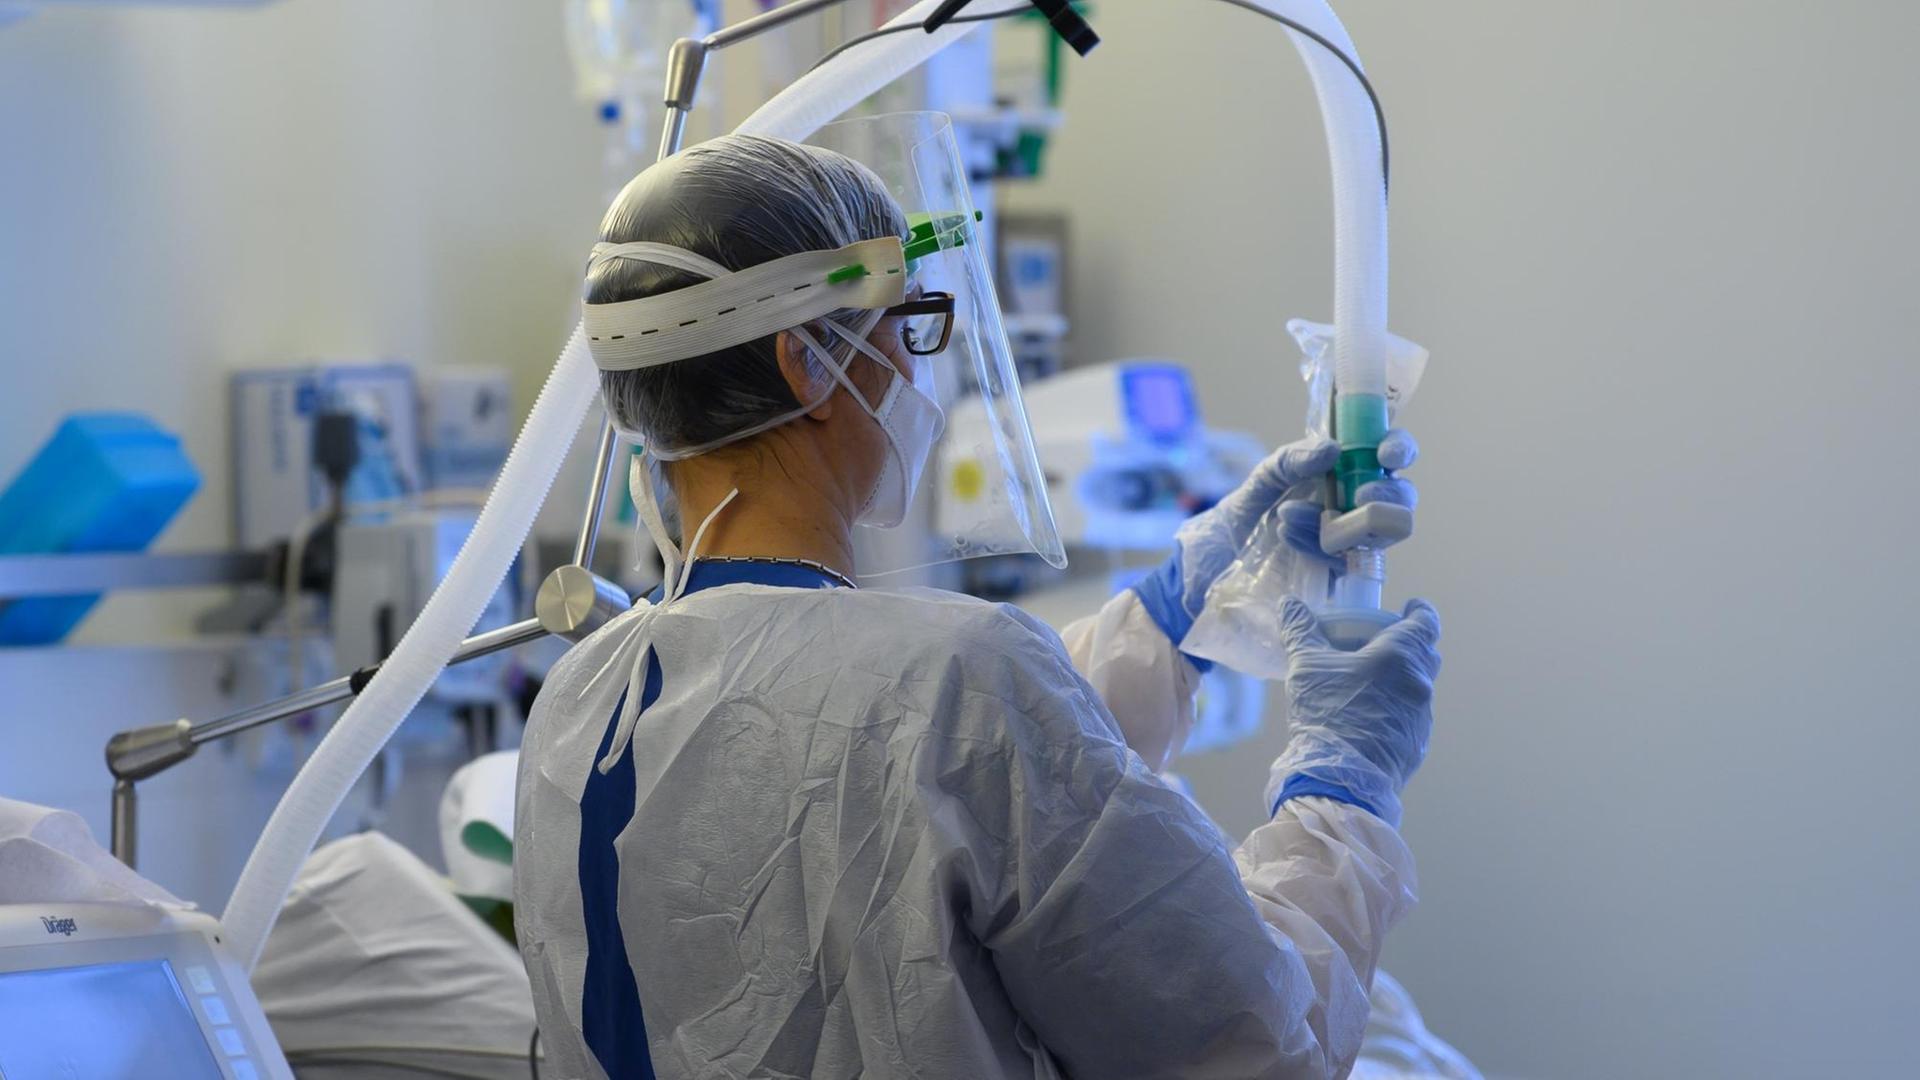 Eine Intensivpflegerin im Schutzanzug richtet auf der Covid-19 Intensivstation in der VAMED Klinik Schloss Pulsnitz einen Beatmungsschlauch ein.